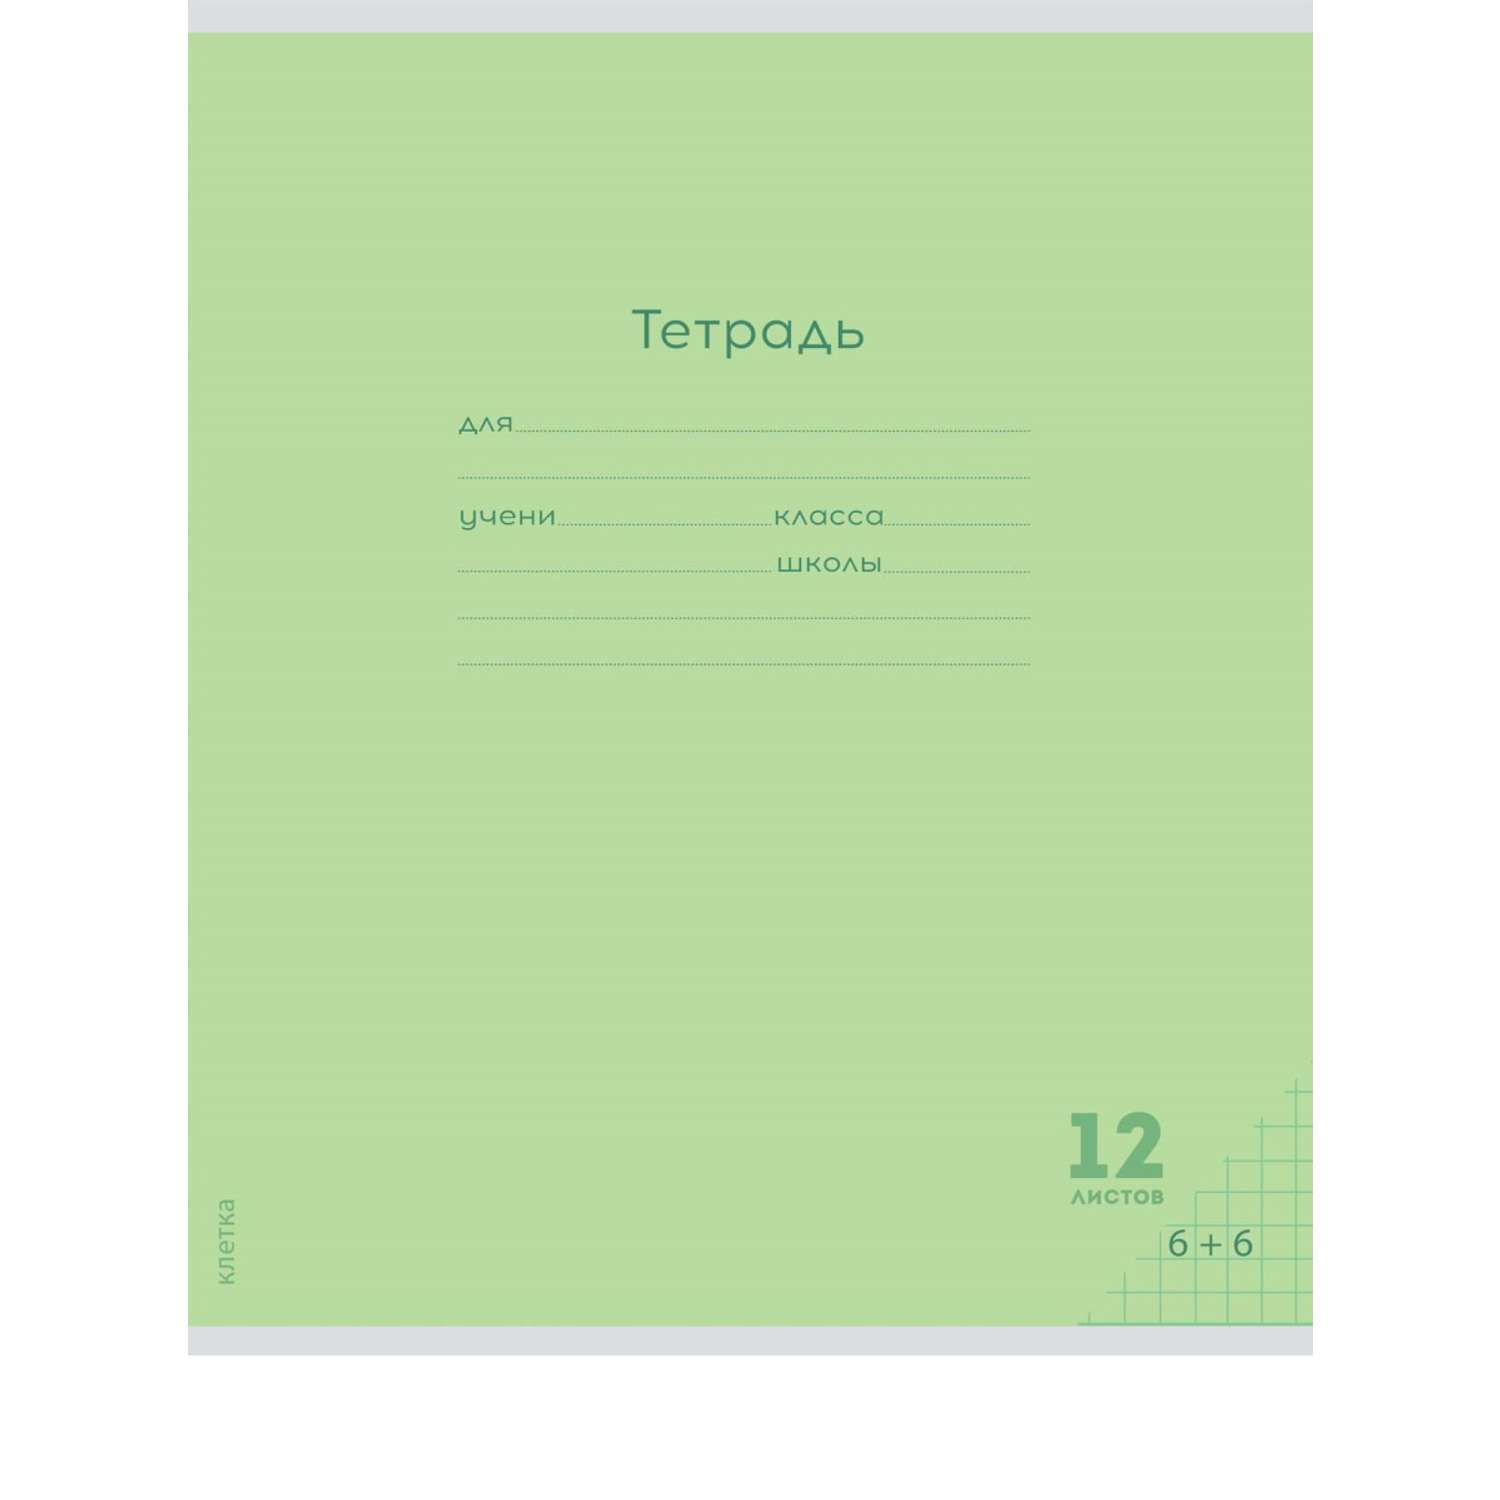 Тетради Prof Press Клетка 12л. классика цветная мелованная обложка комплект 10 штук - фото 7